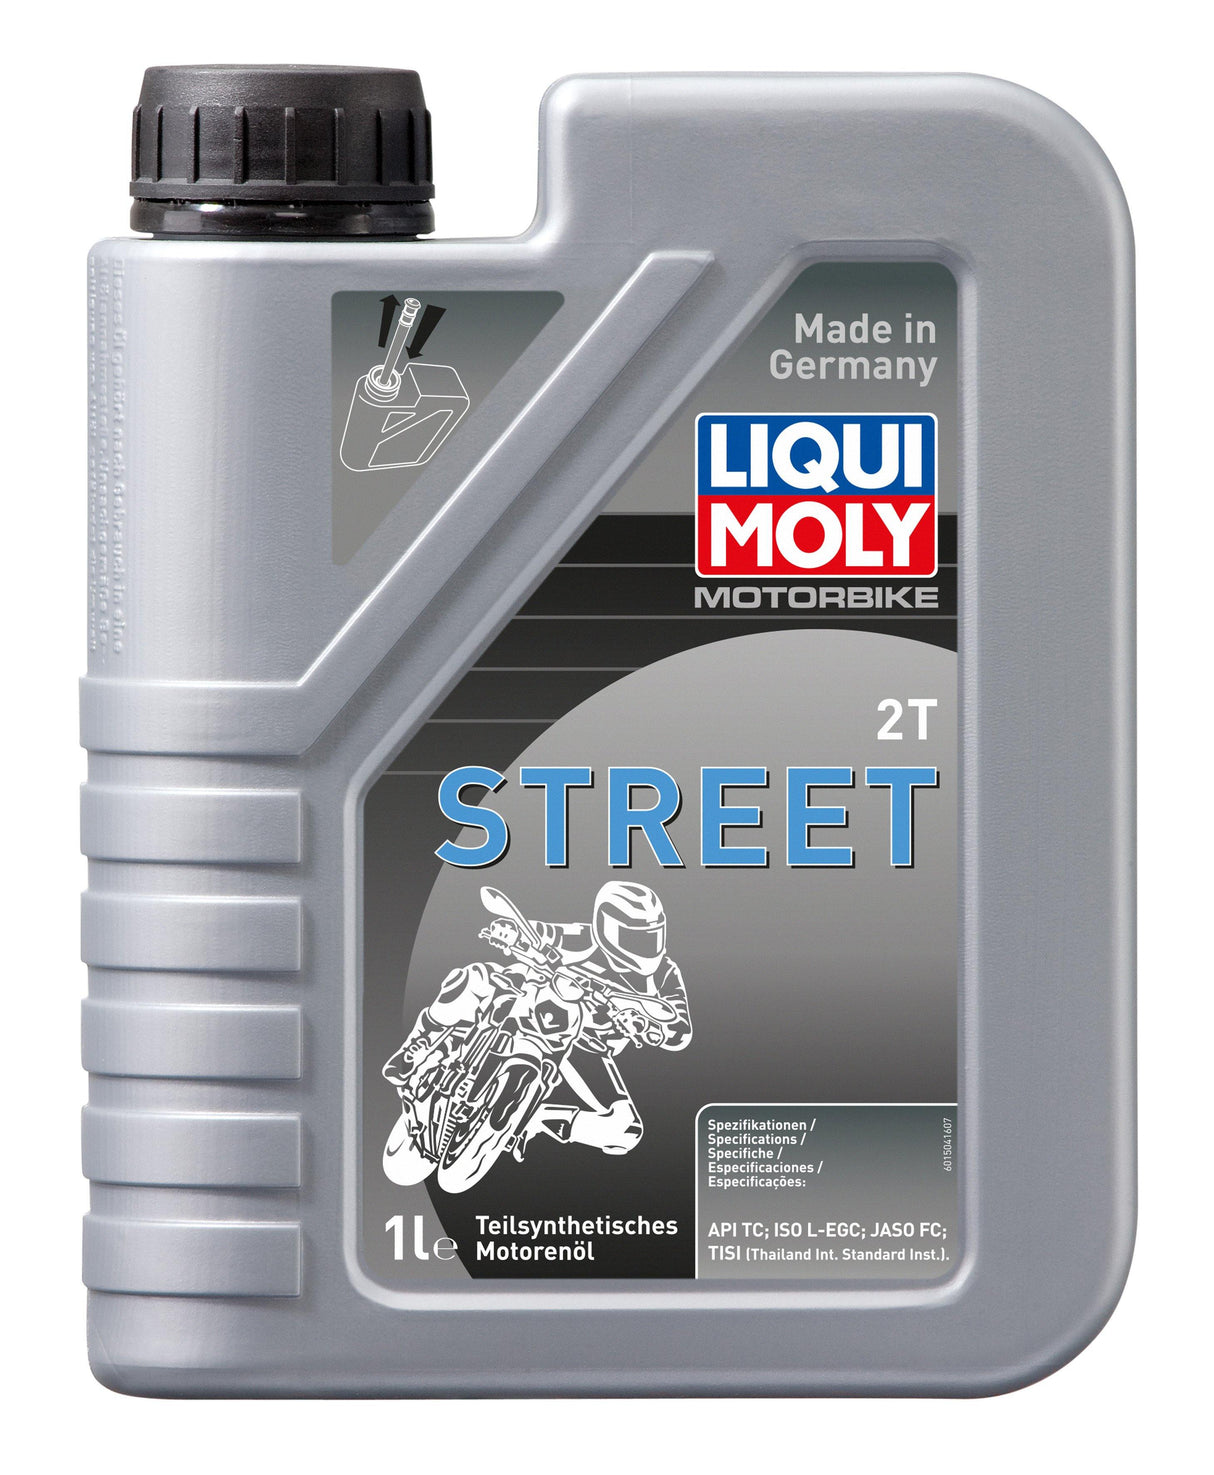 Liqui Moly Motorbike 2T Street - Liqui Moly Brasil - A No.1 da Alemanha de Lubrificantes e Aditivos